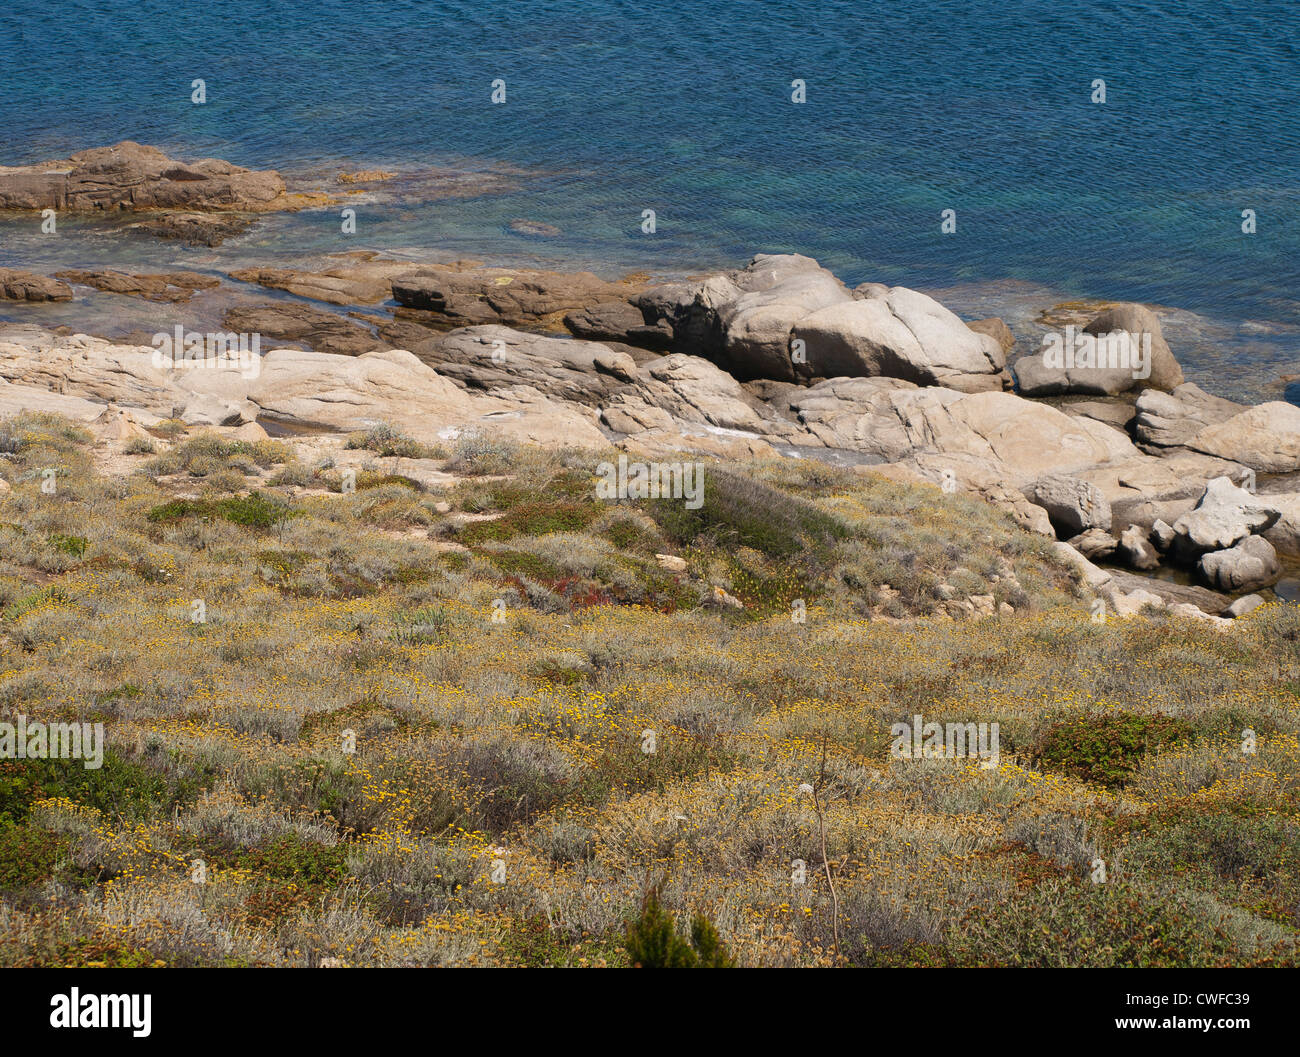 Azzurro mare mediterraneo insieme contro le rocce e con una leggera pendenza con fiori e cespugli a secco Foto Stock